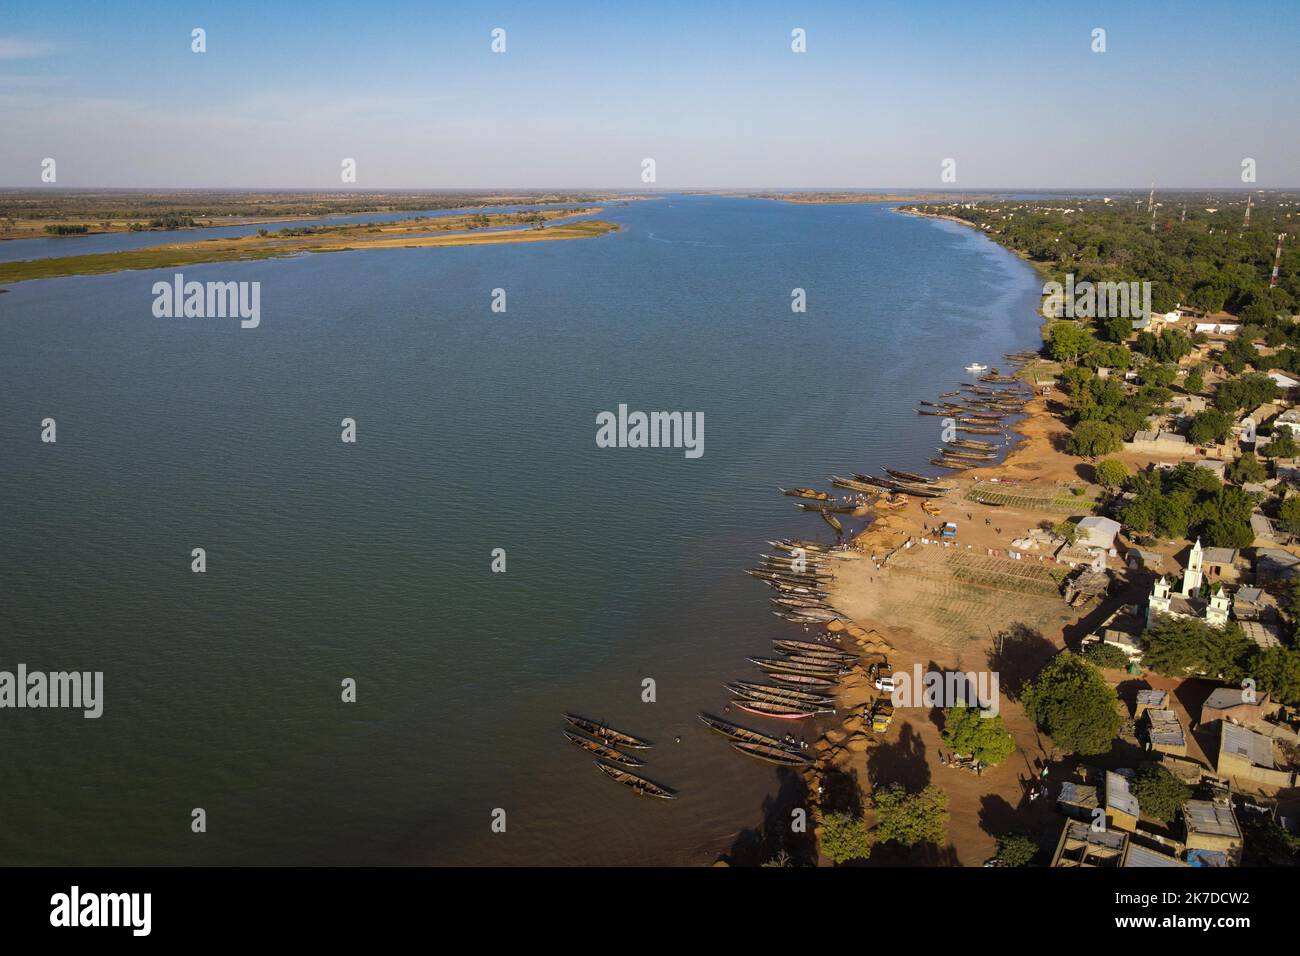 ©Nicolas Remene / Le Pictorium/MAXPPP - Nicolas Remene / Le Pictorium - 31/12/2020 - Mali / Segou / Segou - Vue aerienne sur le Fleuve Niger a Segou, Mali. / 31/12/2020 - Mali / Segou / Segou - Aerial view of the Niger River in Segou, Mali. Stock Photo